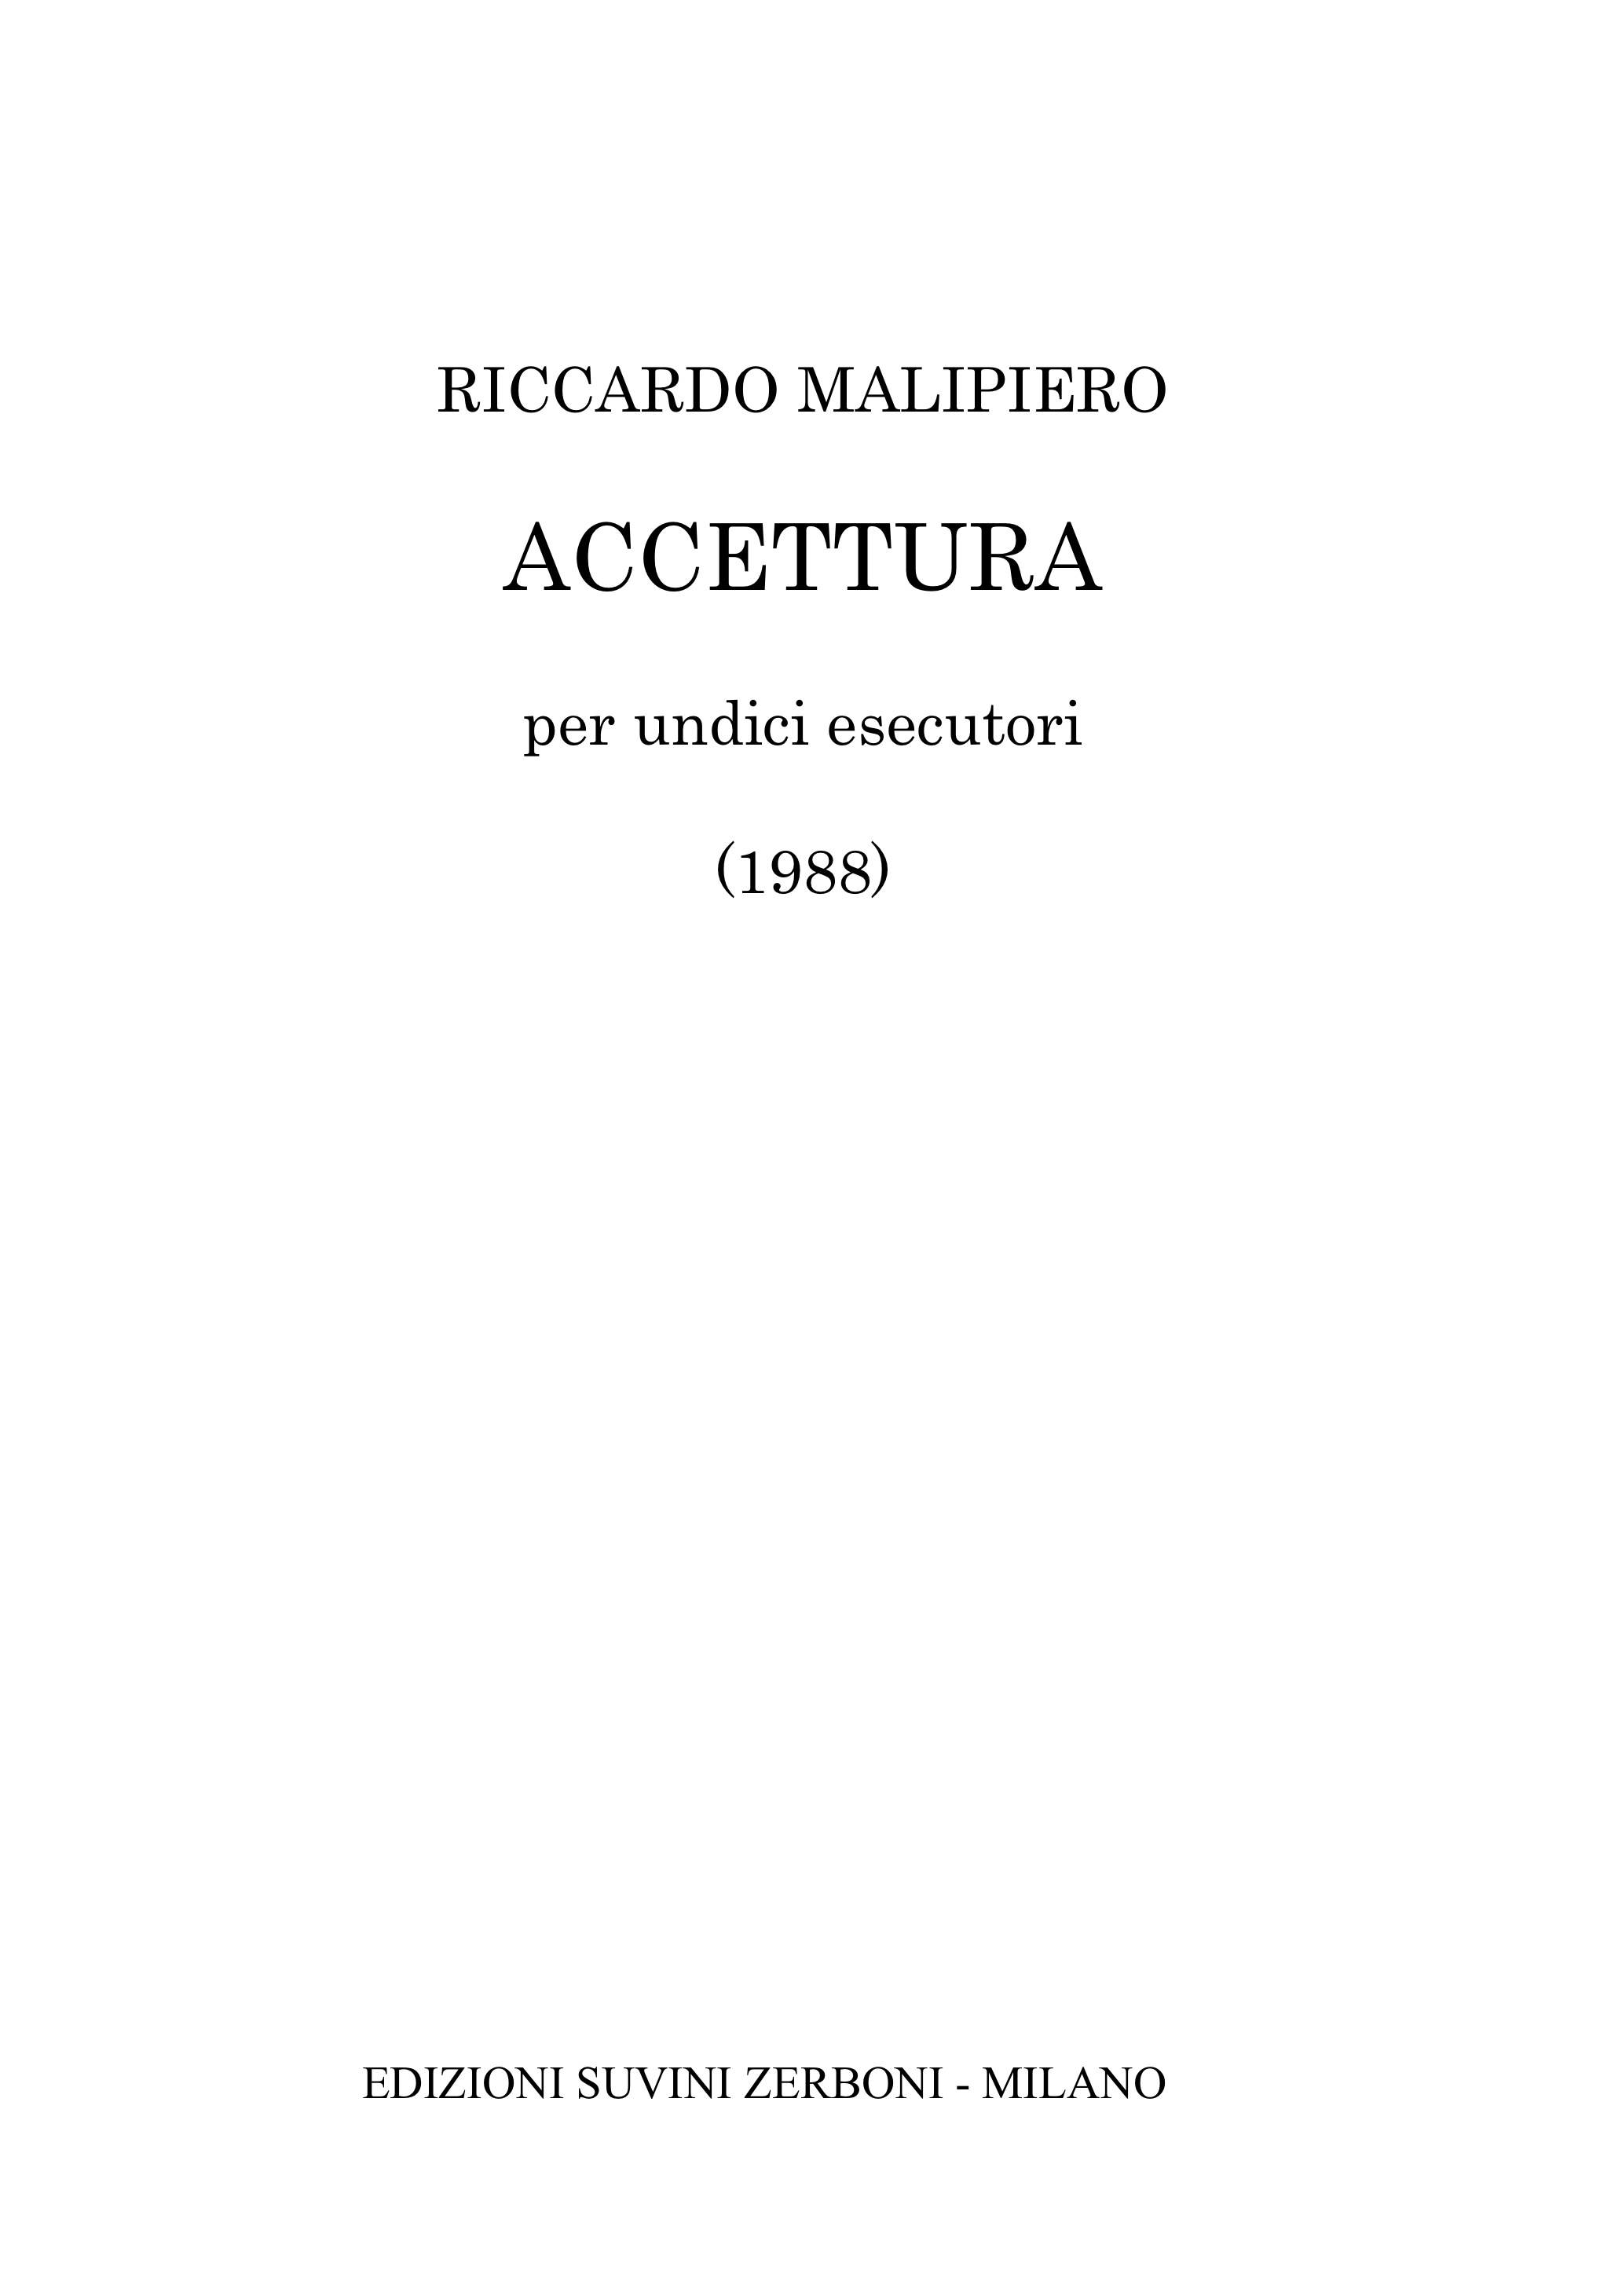 Accettura_Malipiero Riccardo 1